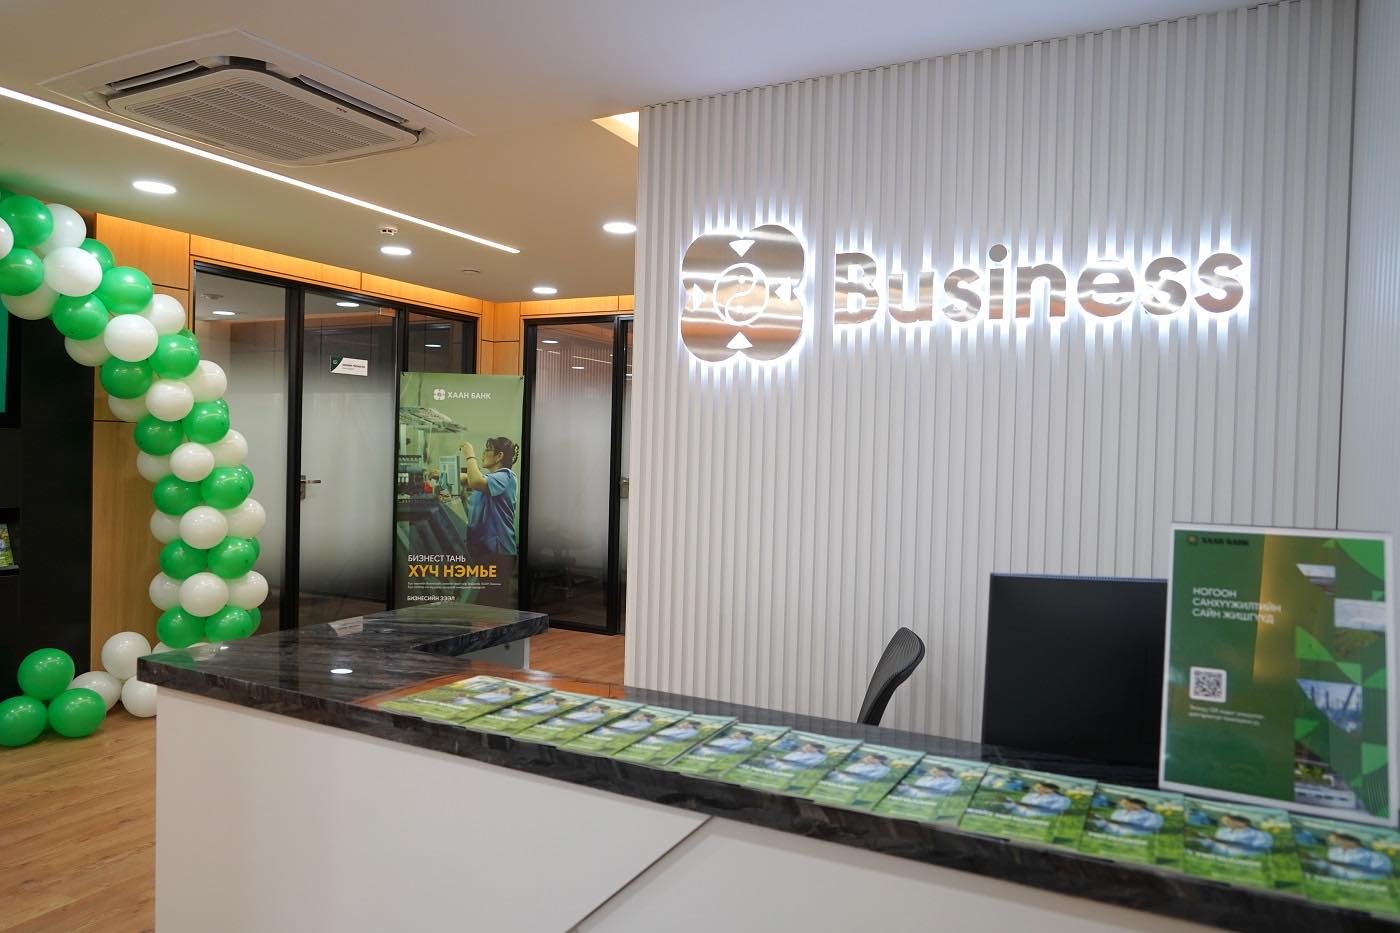 ХААН Банк Хөвсгөл аймгийн бизнес эрхлэгчдэд үйлчлэх “Бизнес төв”-өө нээлээ